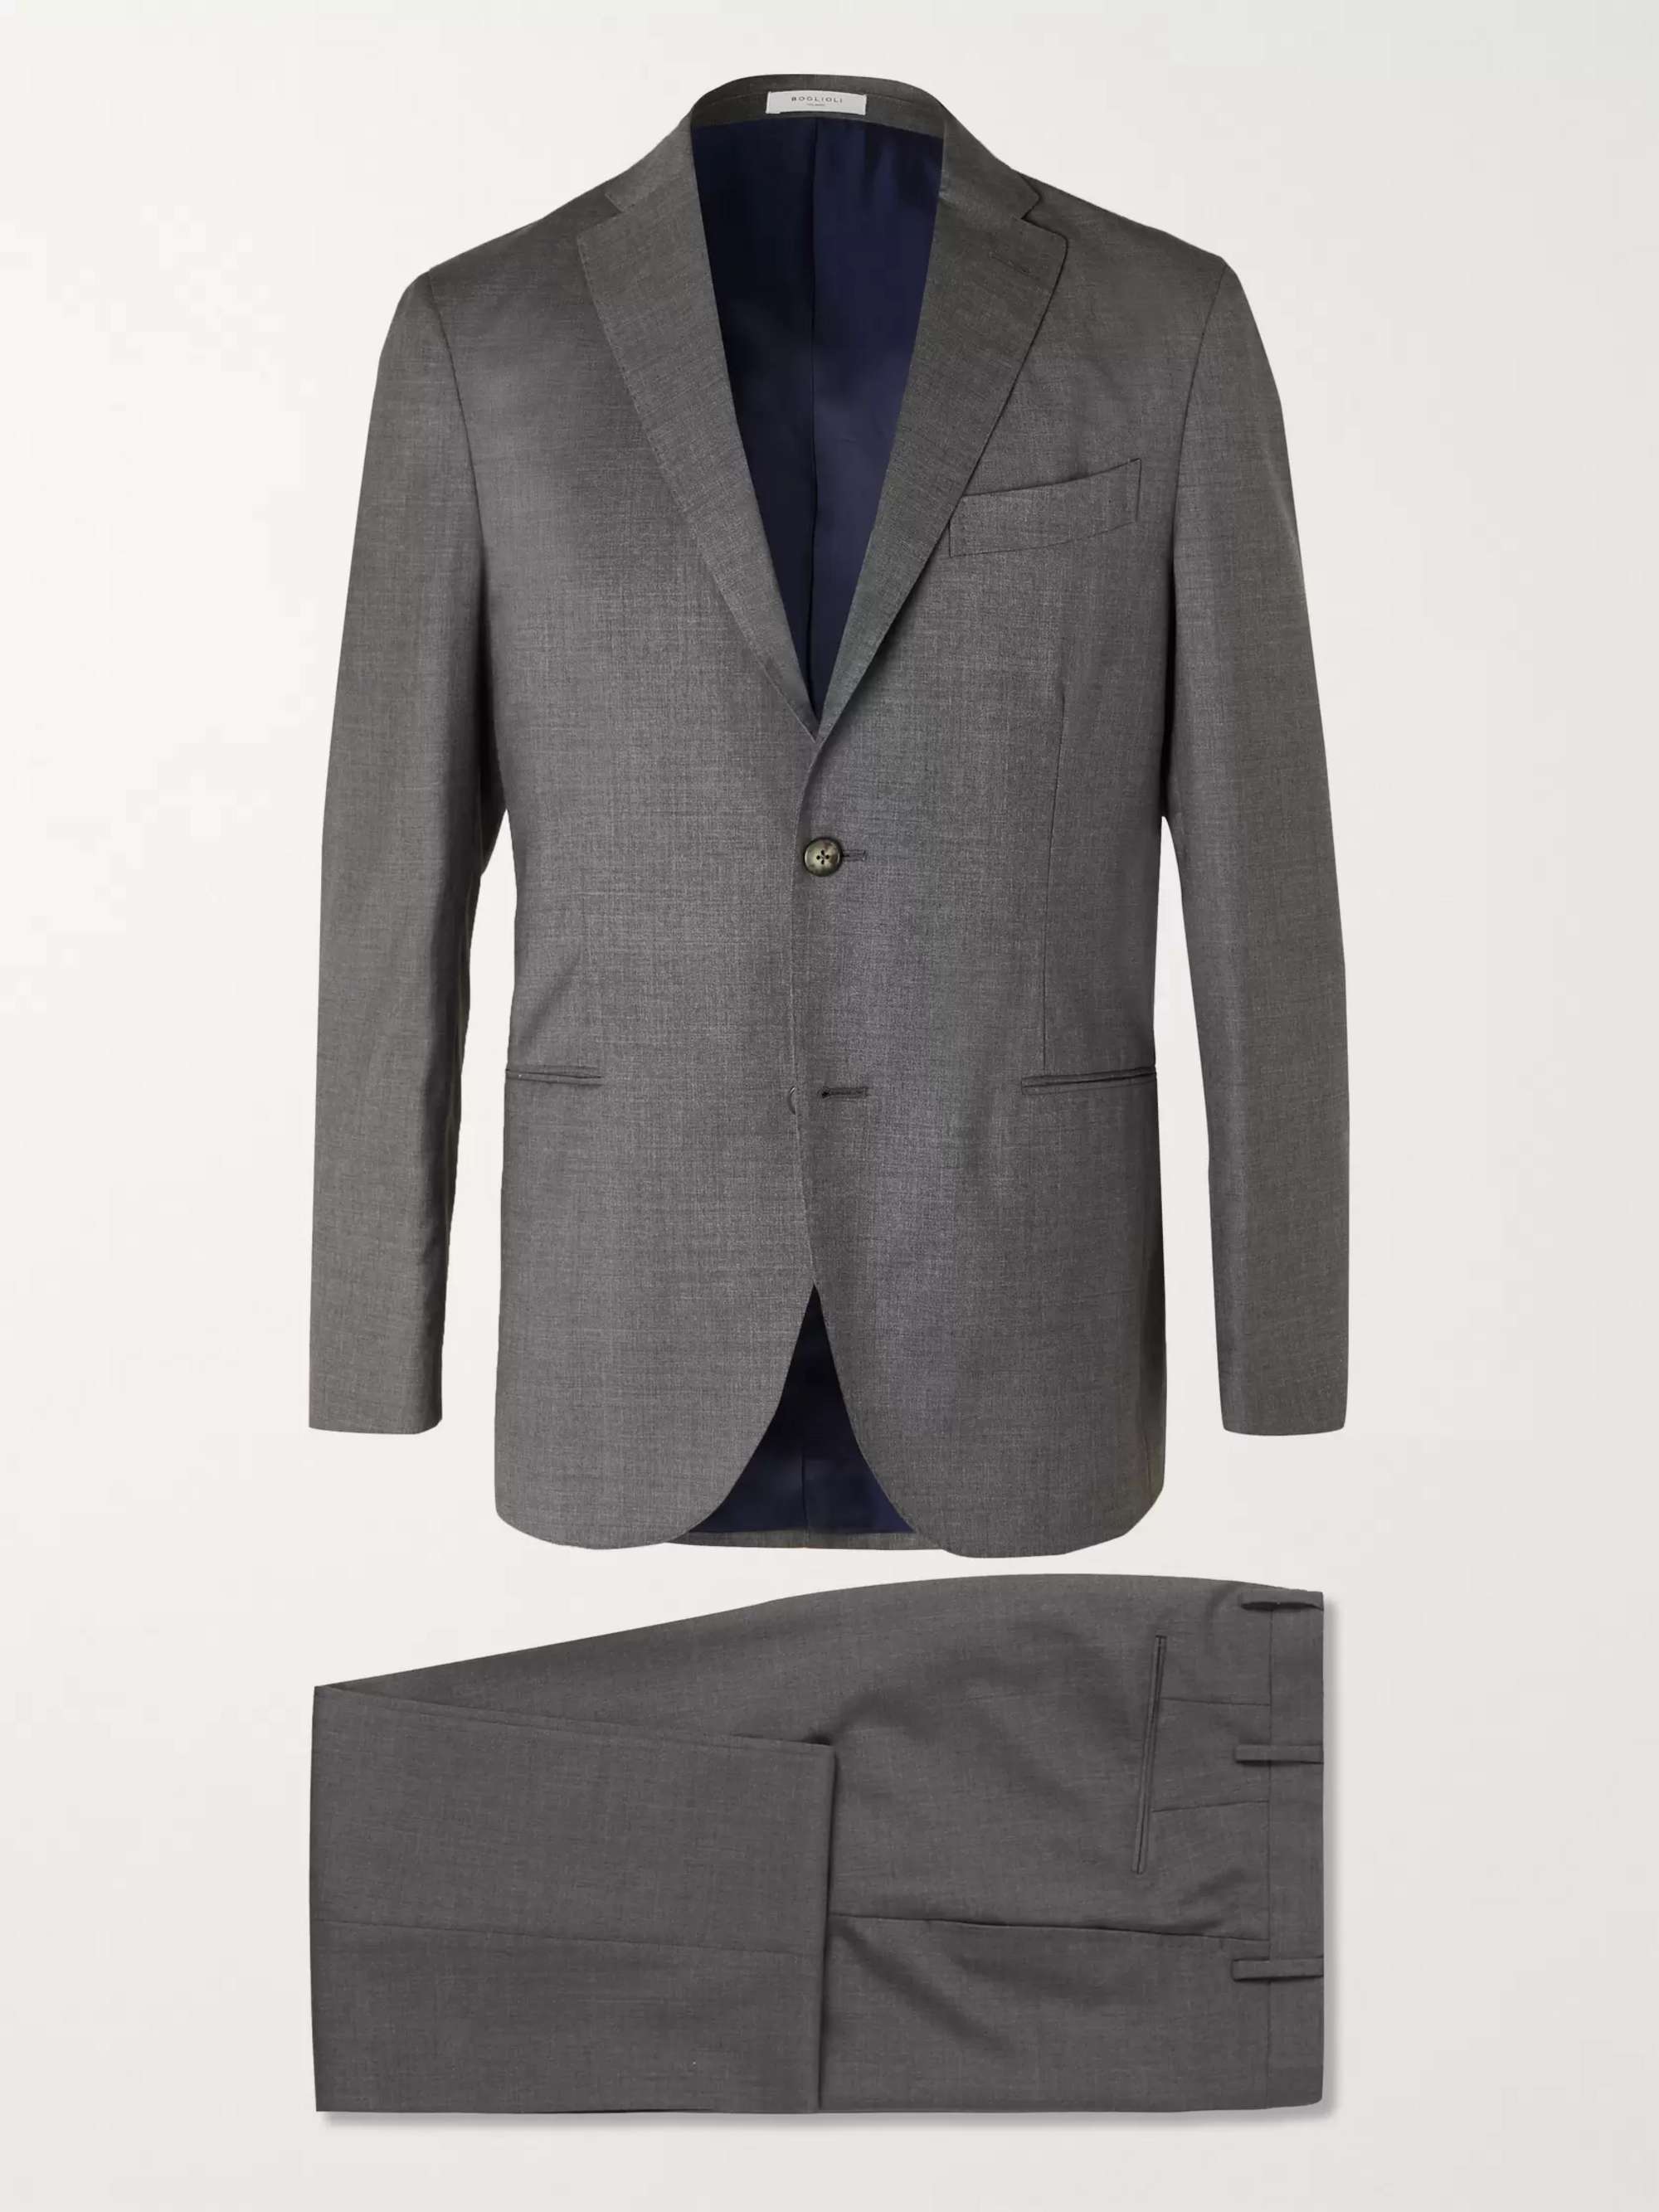 BOGLIOLI Grey Slim-Fit Virgin Wool Suit